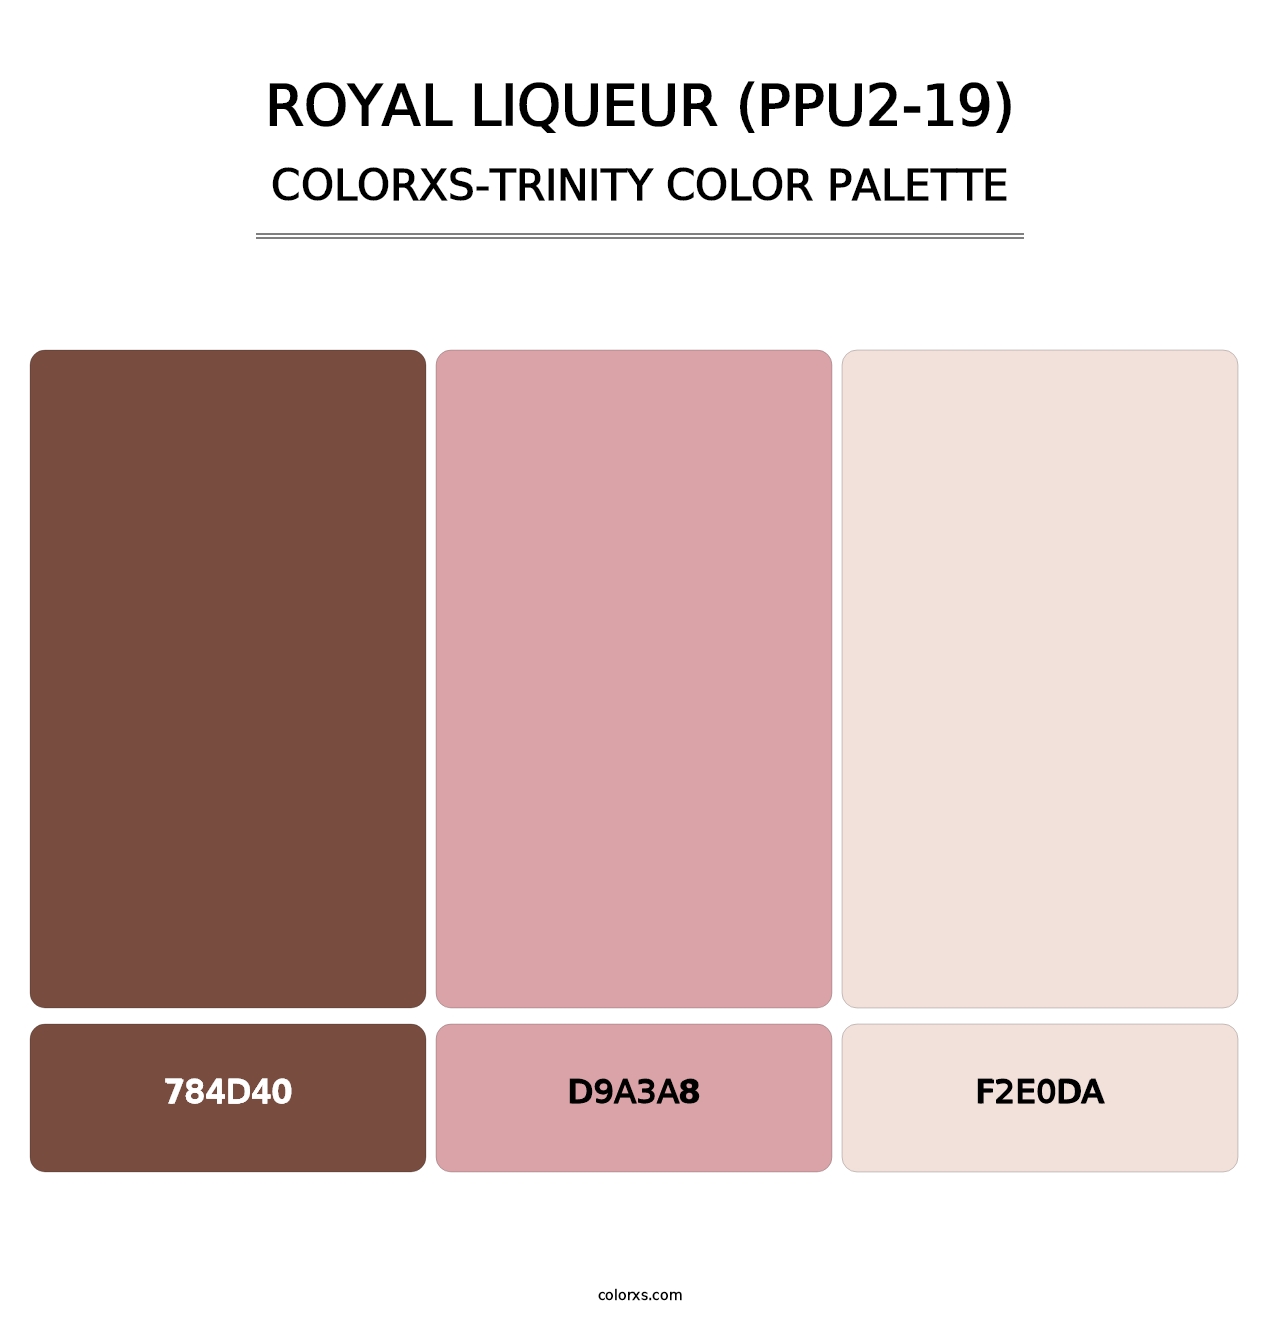 Royal Liqueur (PPU2-19) - Colorxs Trinity Palette